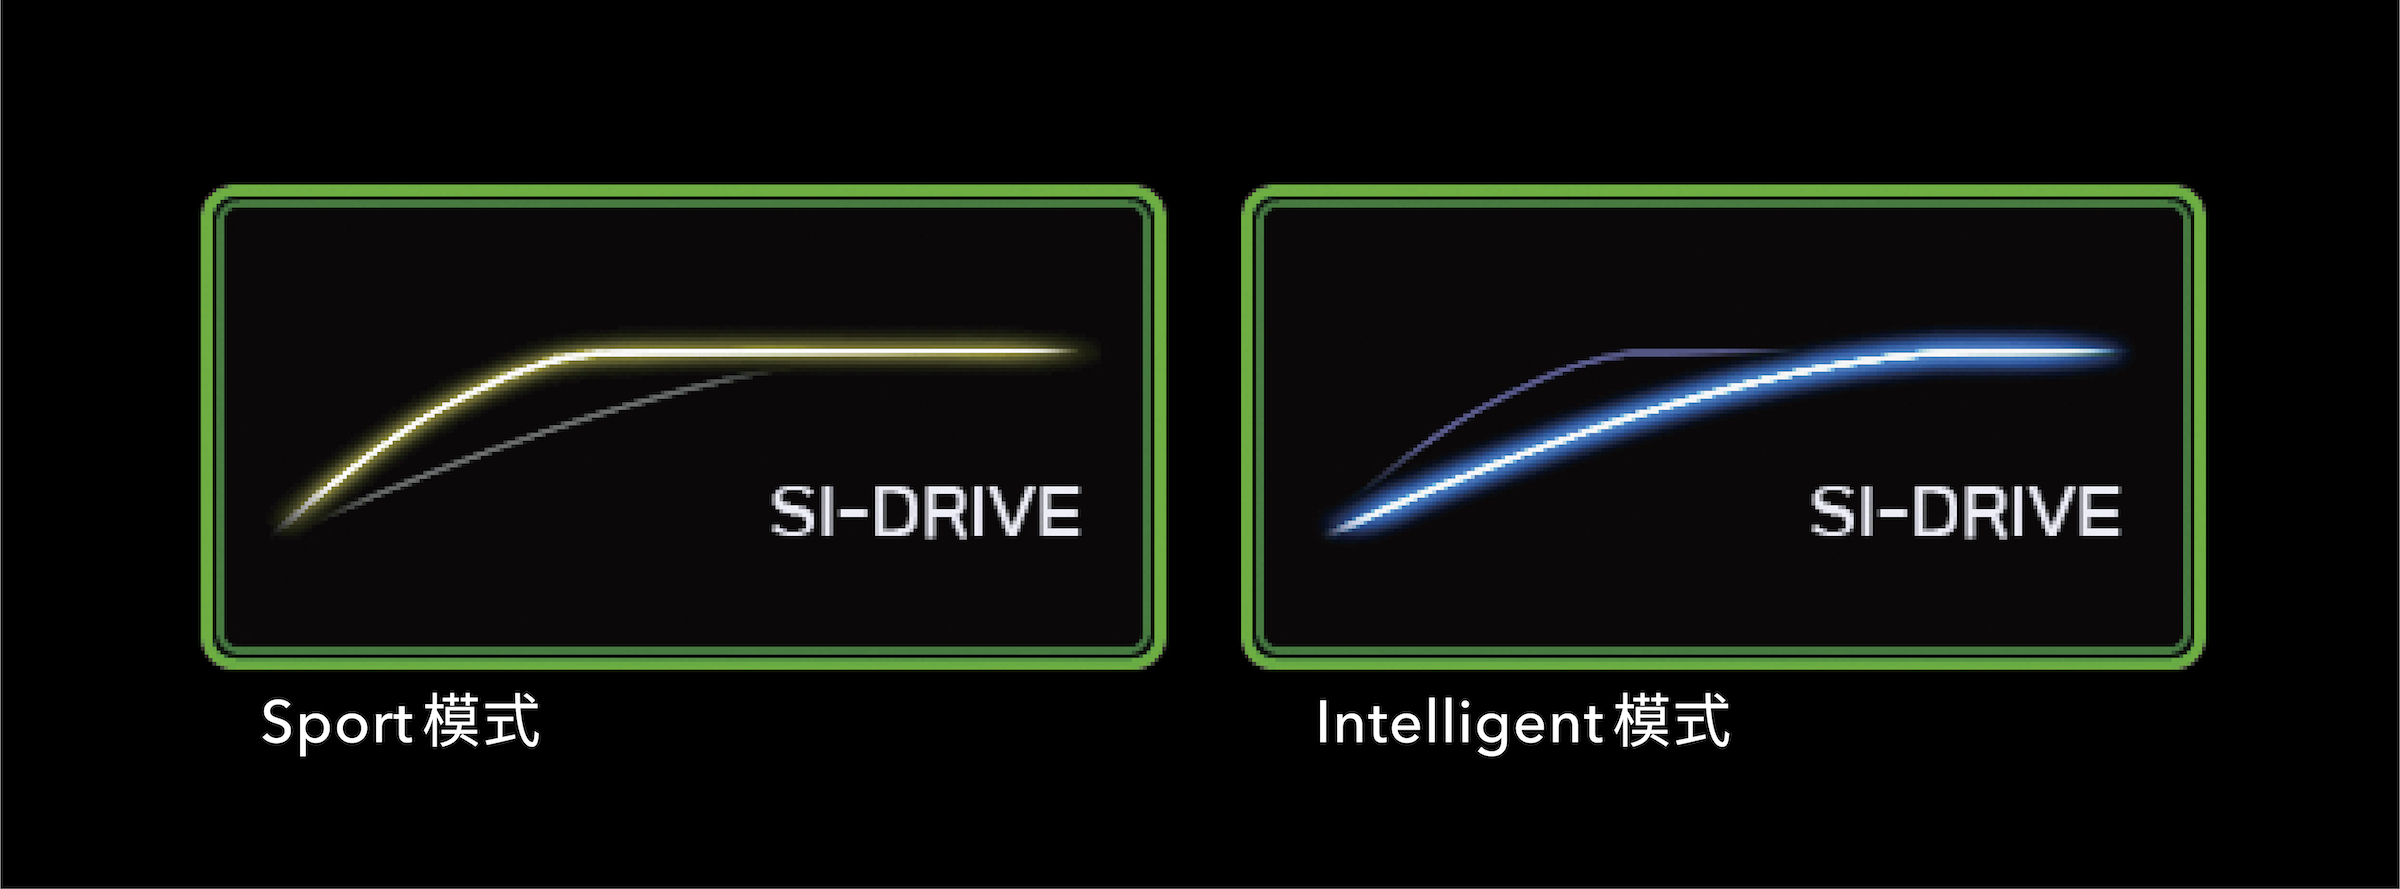 新搭載的 Si-Drive 雙模式動力控制系統，提供運動（Sport）及智慧（Intelligent）兩種駕駛模式選擇。